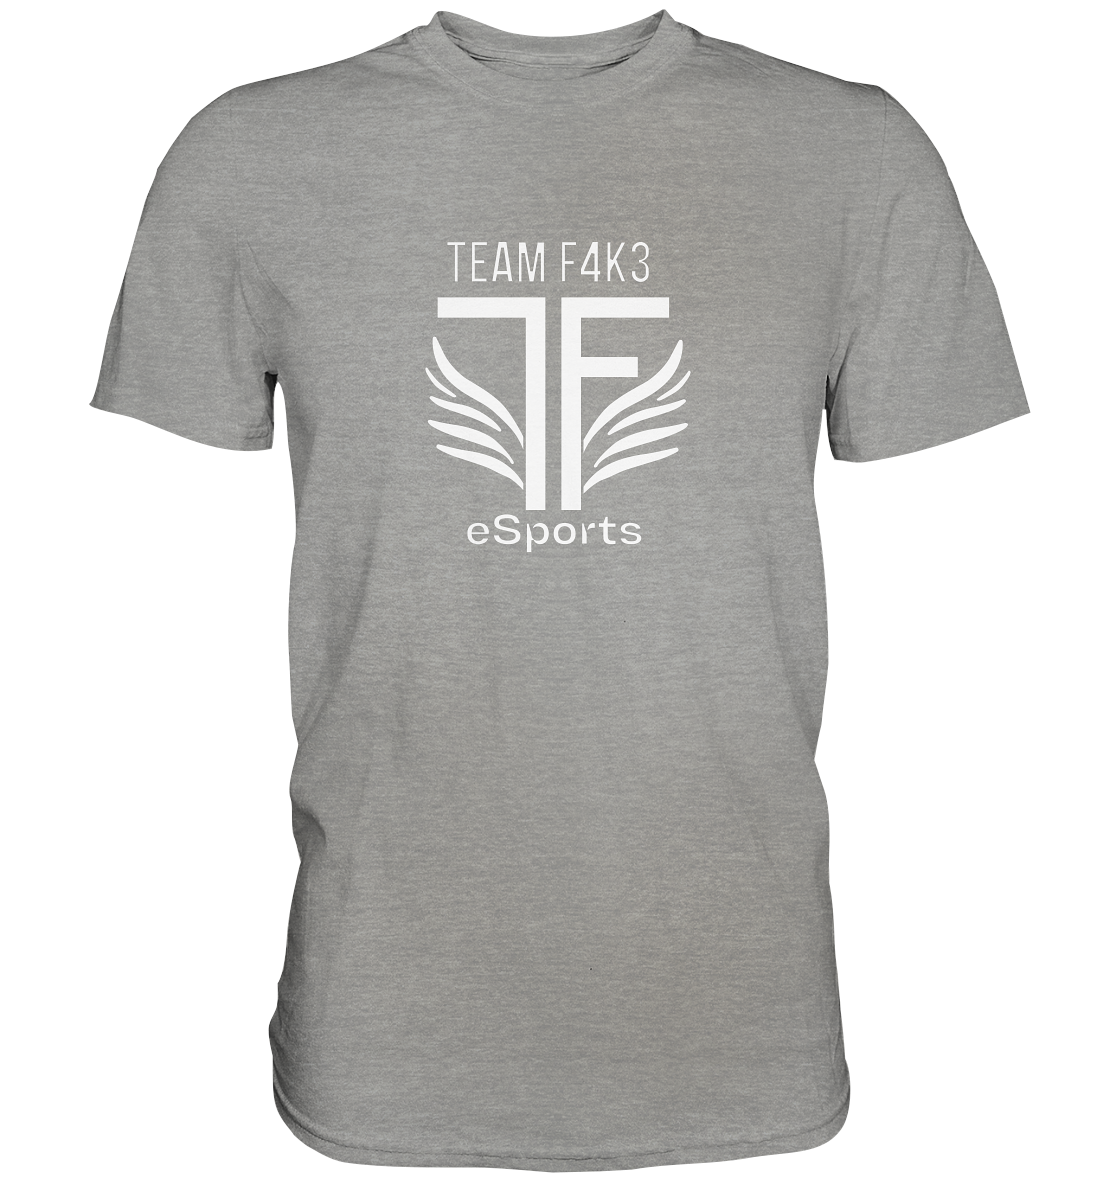 TEAM F4K3 ESPORTS - Basic Shirt